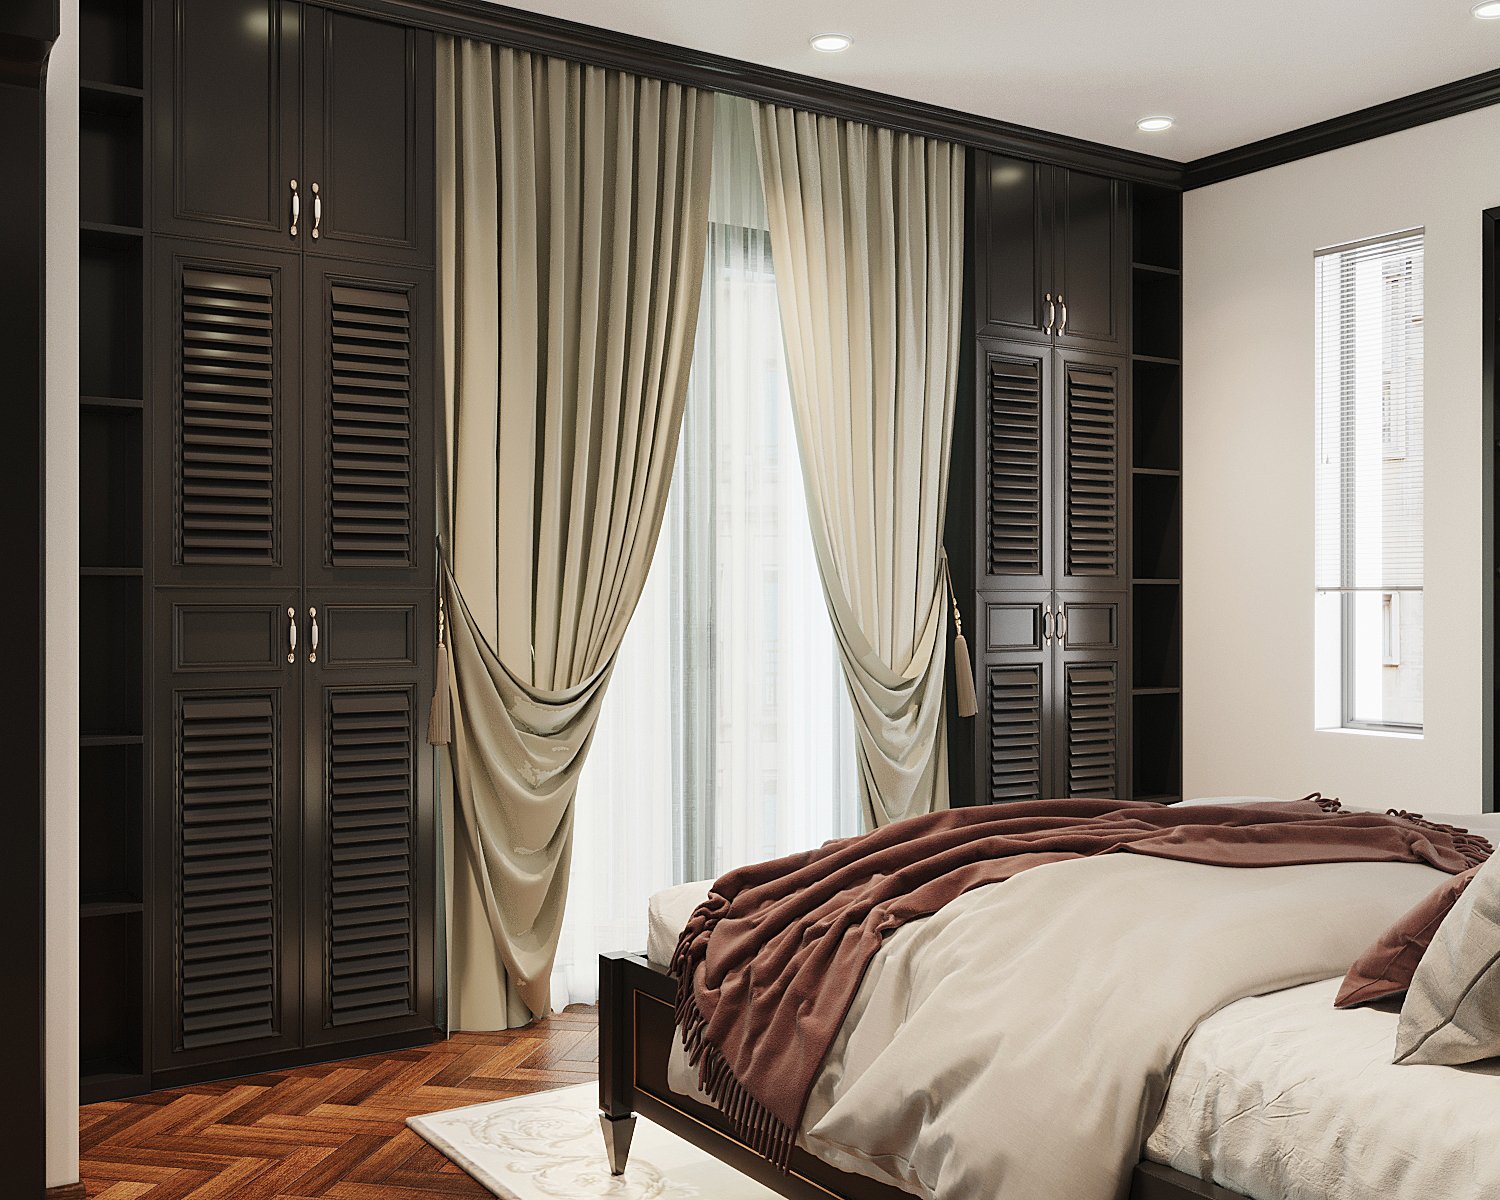 Hệ rèm cửa hai lớp giúp điều tiết linh hoạt ánh sáng tự nhiên vào phòng ngủ, đồng thời bổ sung nét mề mại, quyến rũ cho căn phòng. hai bên là tủ lưu trữ âm tường cao kịch trần.